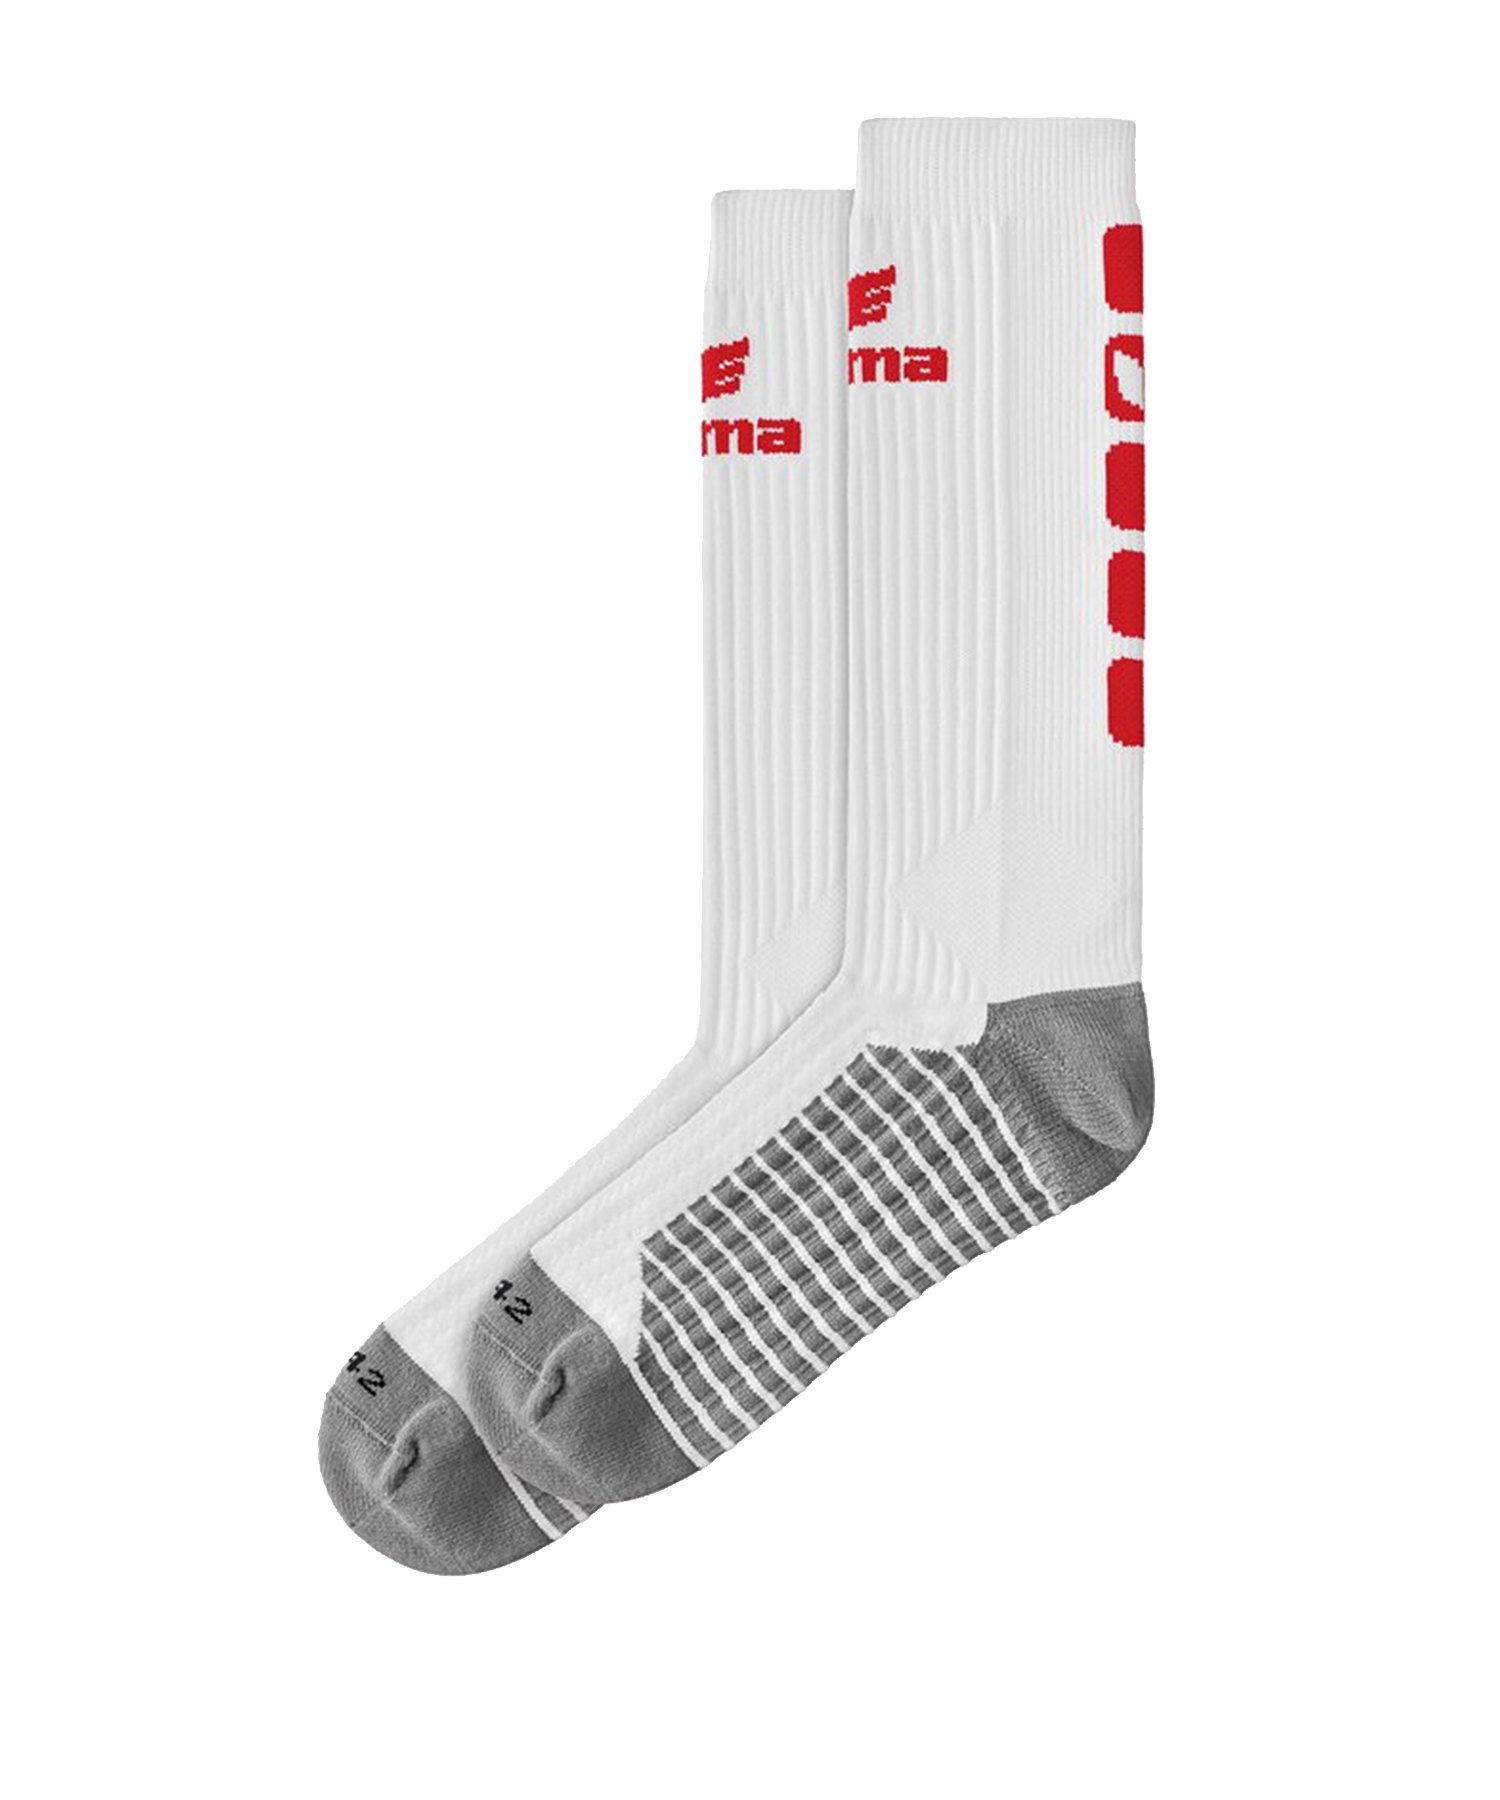 Erima CLASSIC 5-C Socken lang Weiss Rot - Weiss